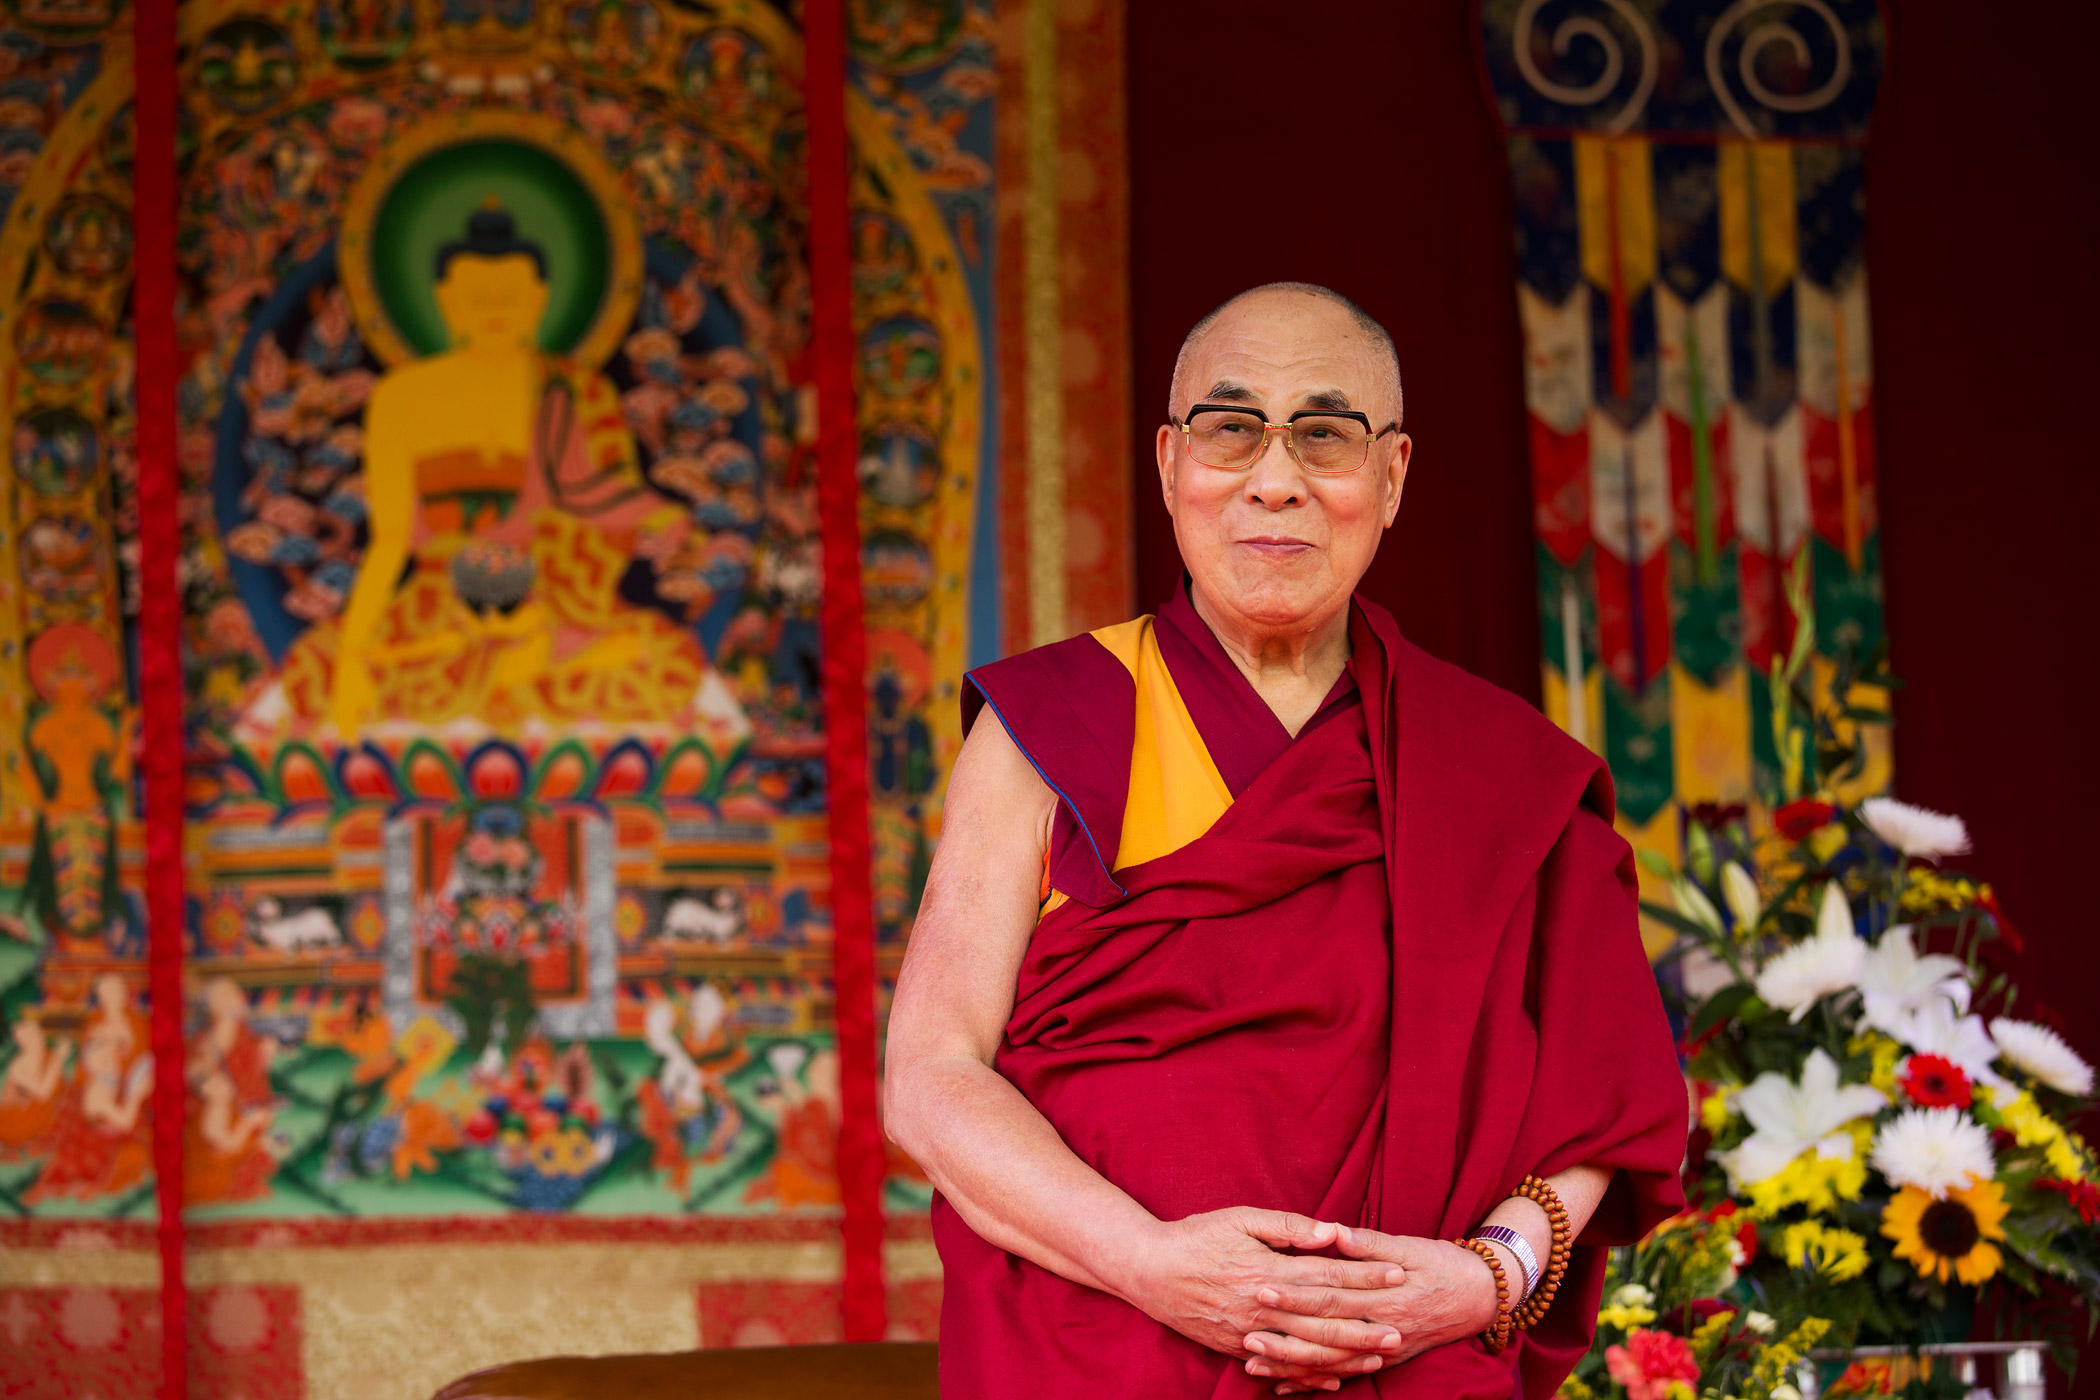  Mudrosti Dalai Lame: Dokle god mislite da je za sve neko drugi kriv, mnogo ćete patiti